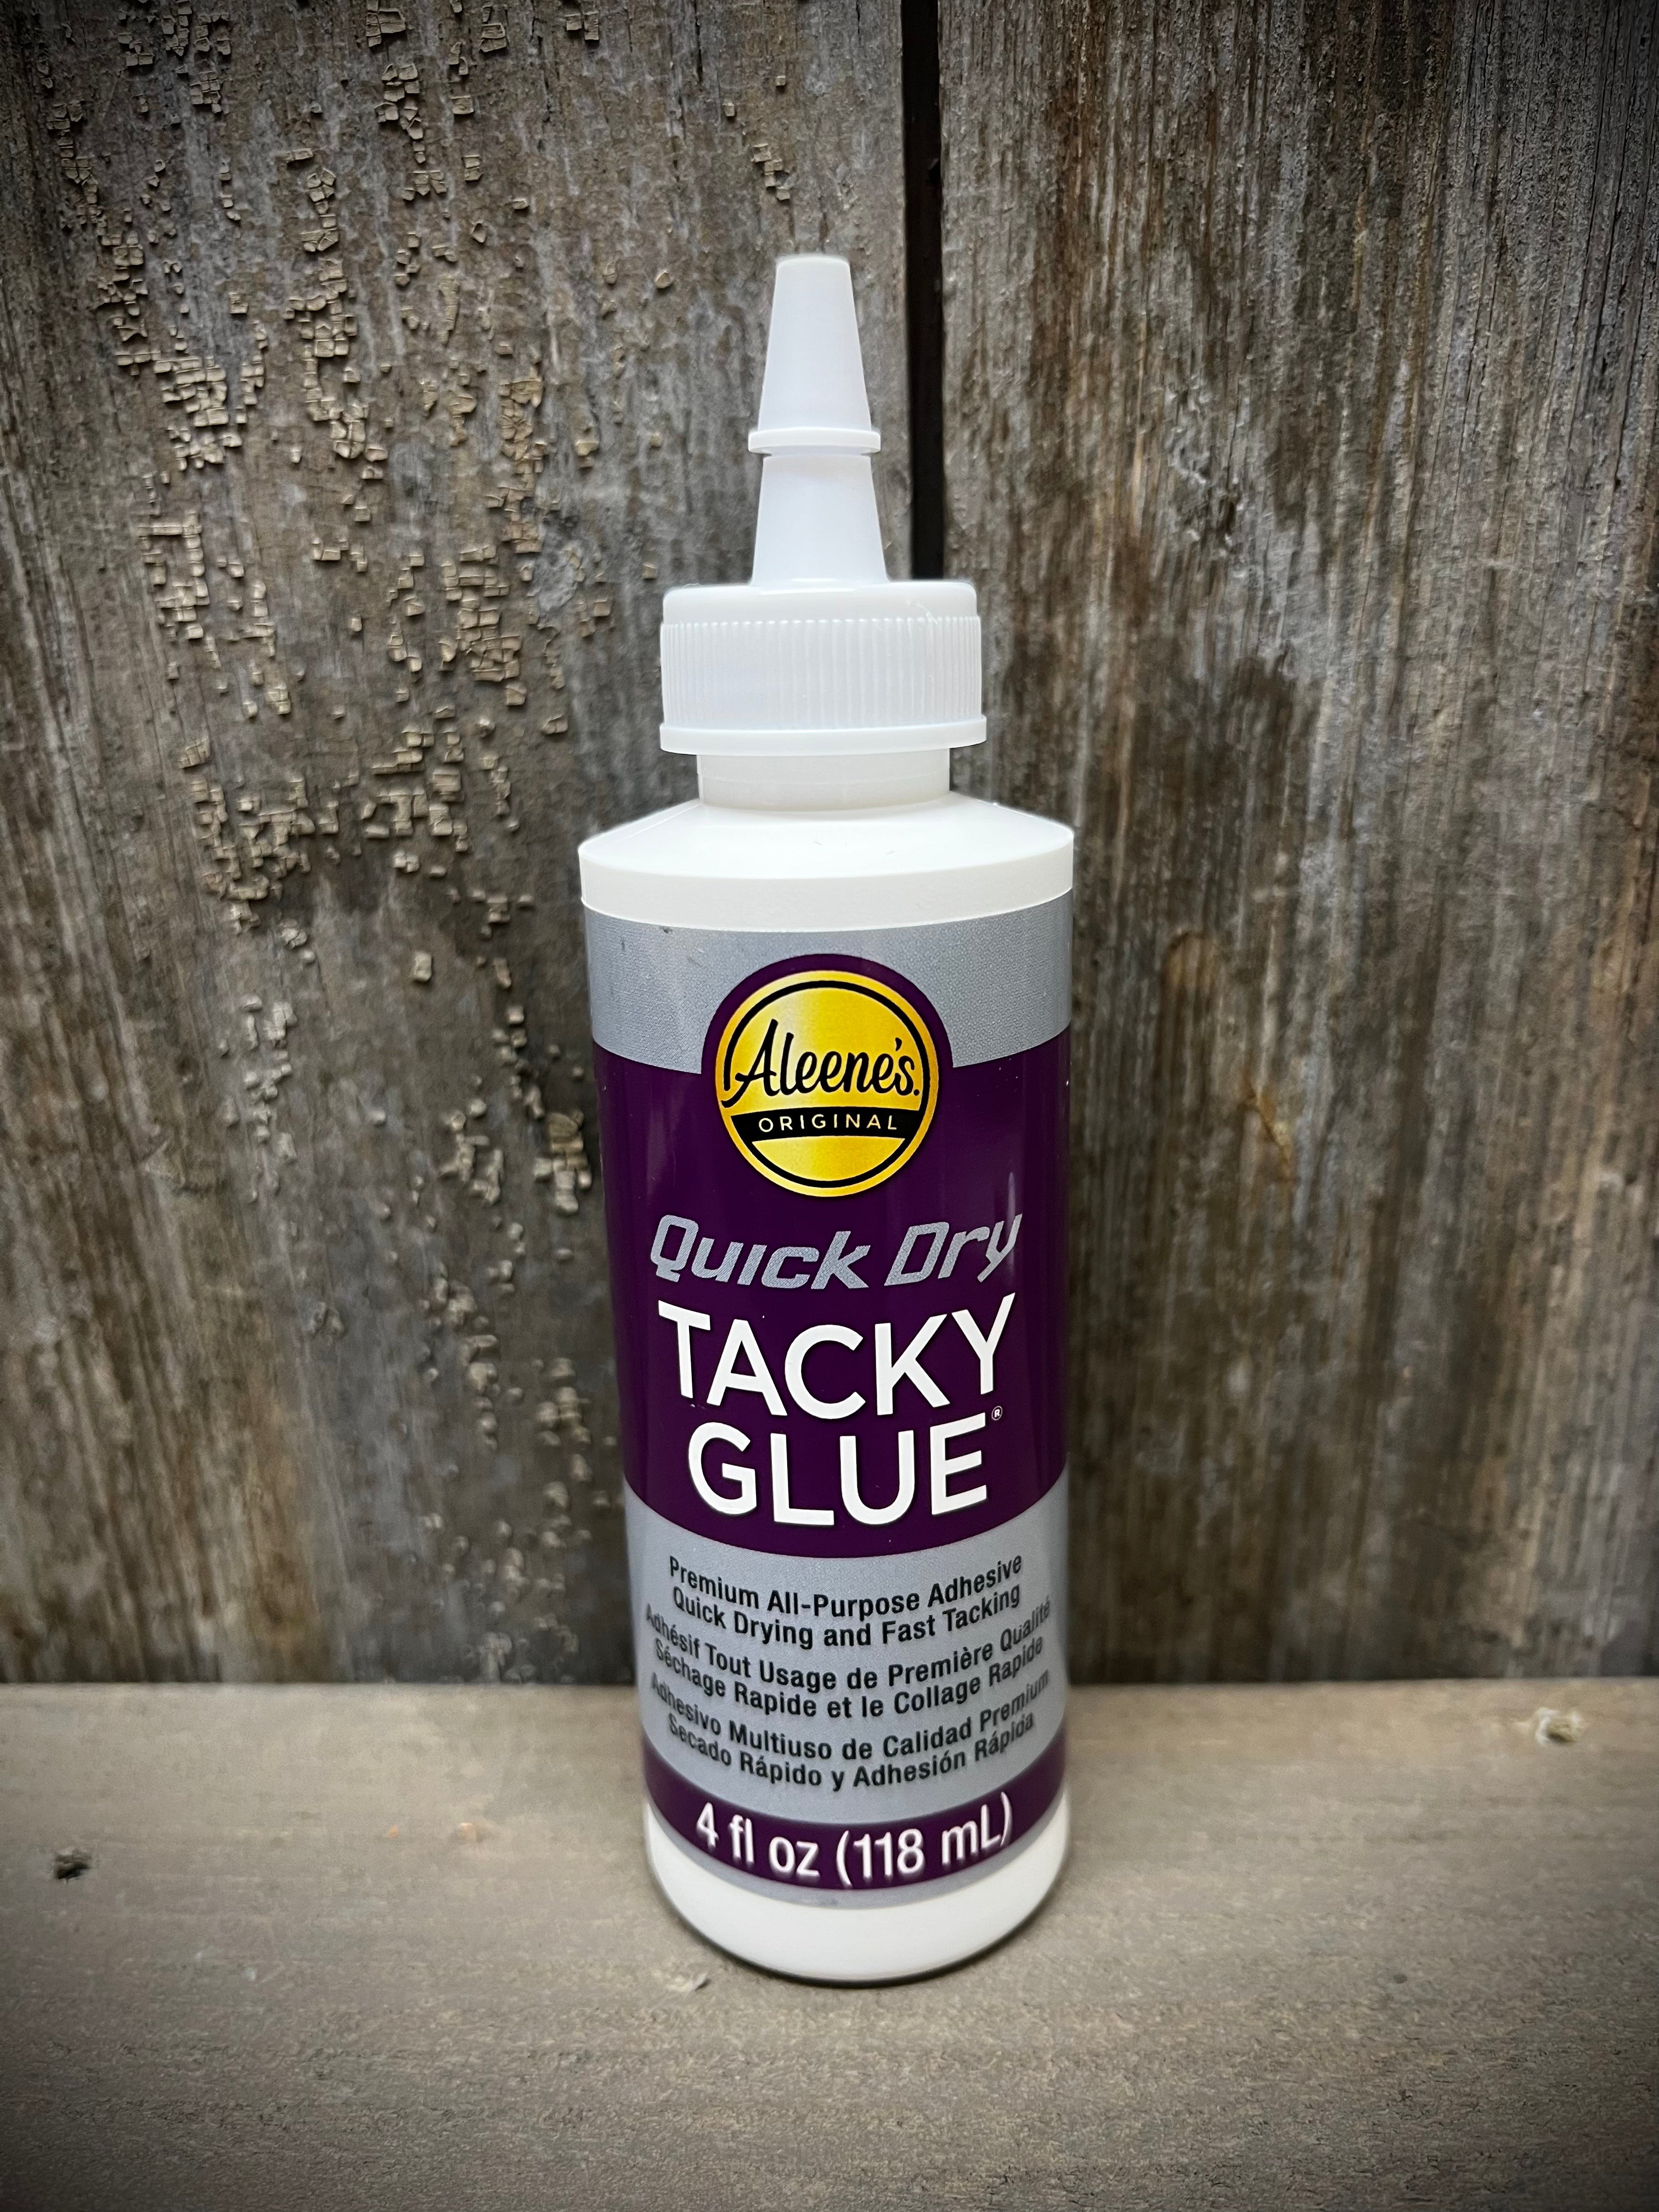 Pegamento Premium Multiuso Tacky Glue Aleene's –